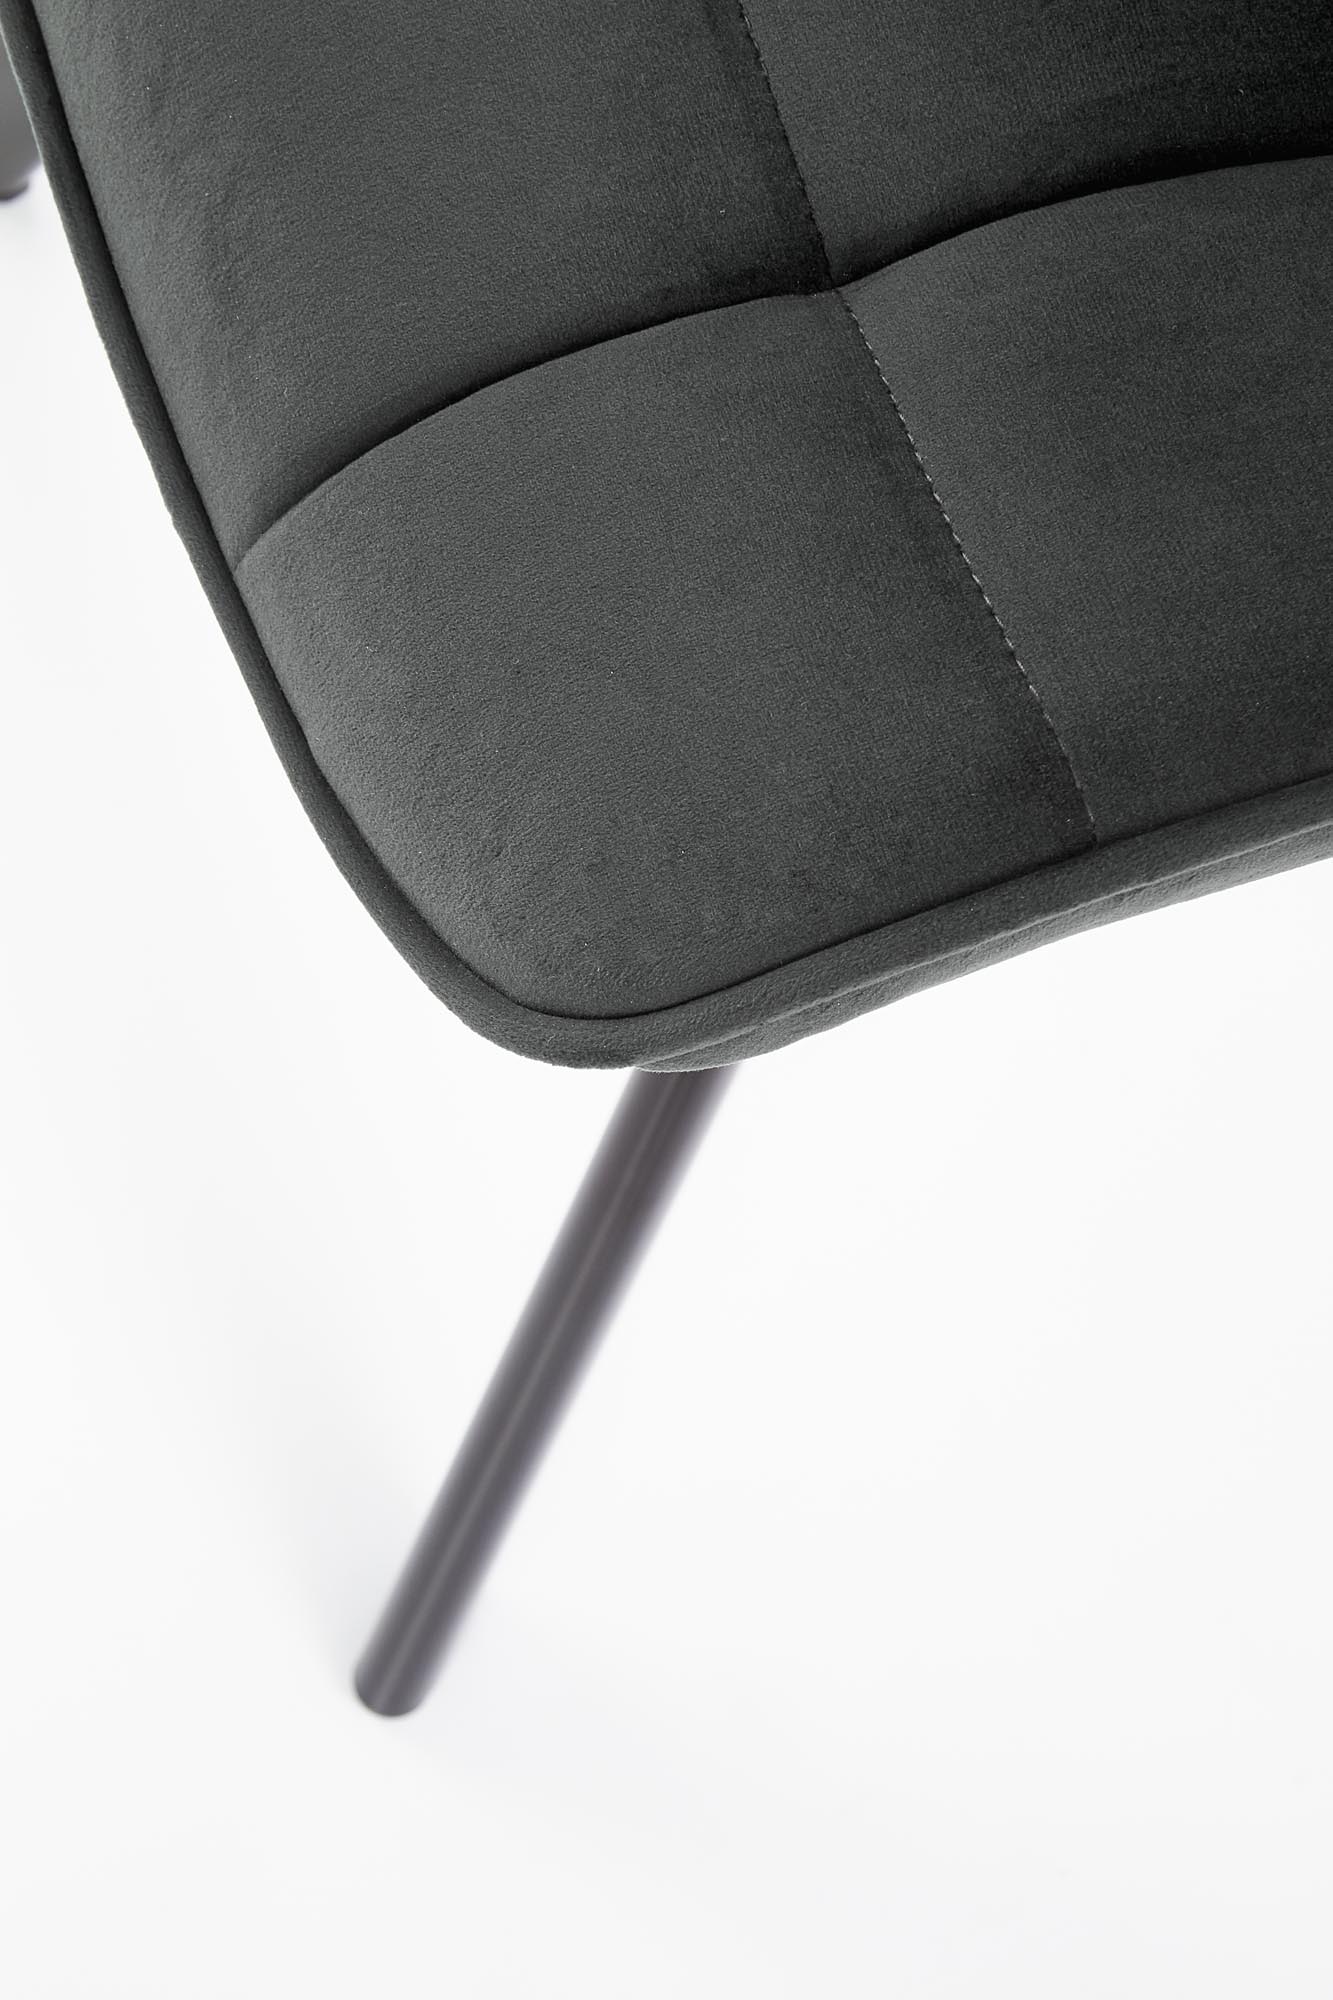 Čalouněná židle K332 - černá / tmavě popelová Židle čalouněné k332 - černé/tmavý popel